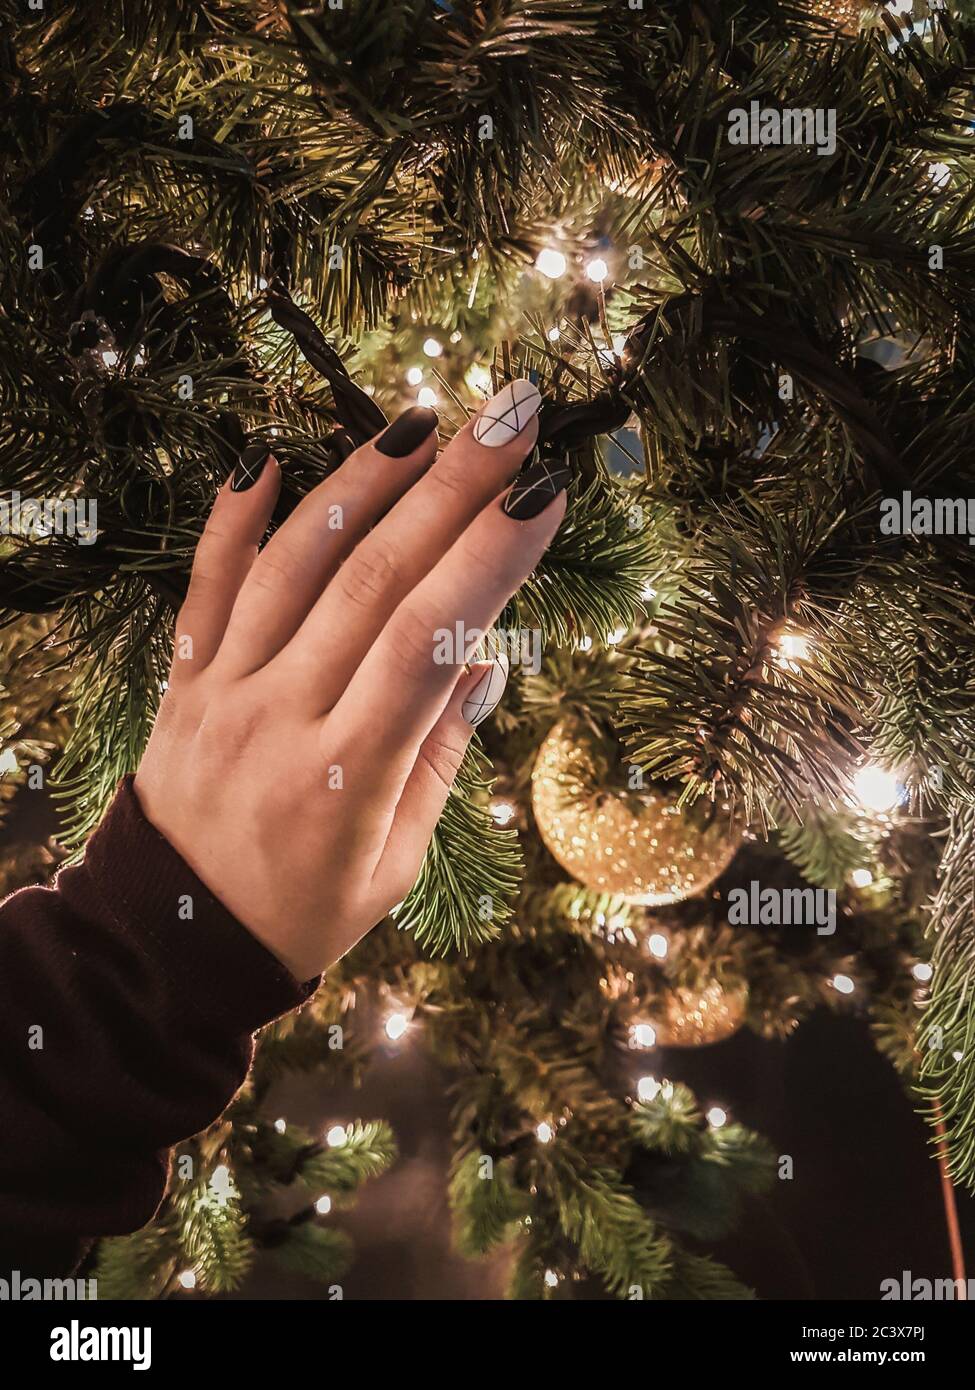 Frau Hand mit schönen schwarz-weißen Maniküre berühren Weihnachtsbaum mit Vorfreude auf Silvester Feier. Festliche fröhliche Stimmung. Ansicht schließen Stockfoto